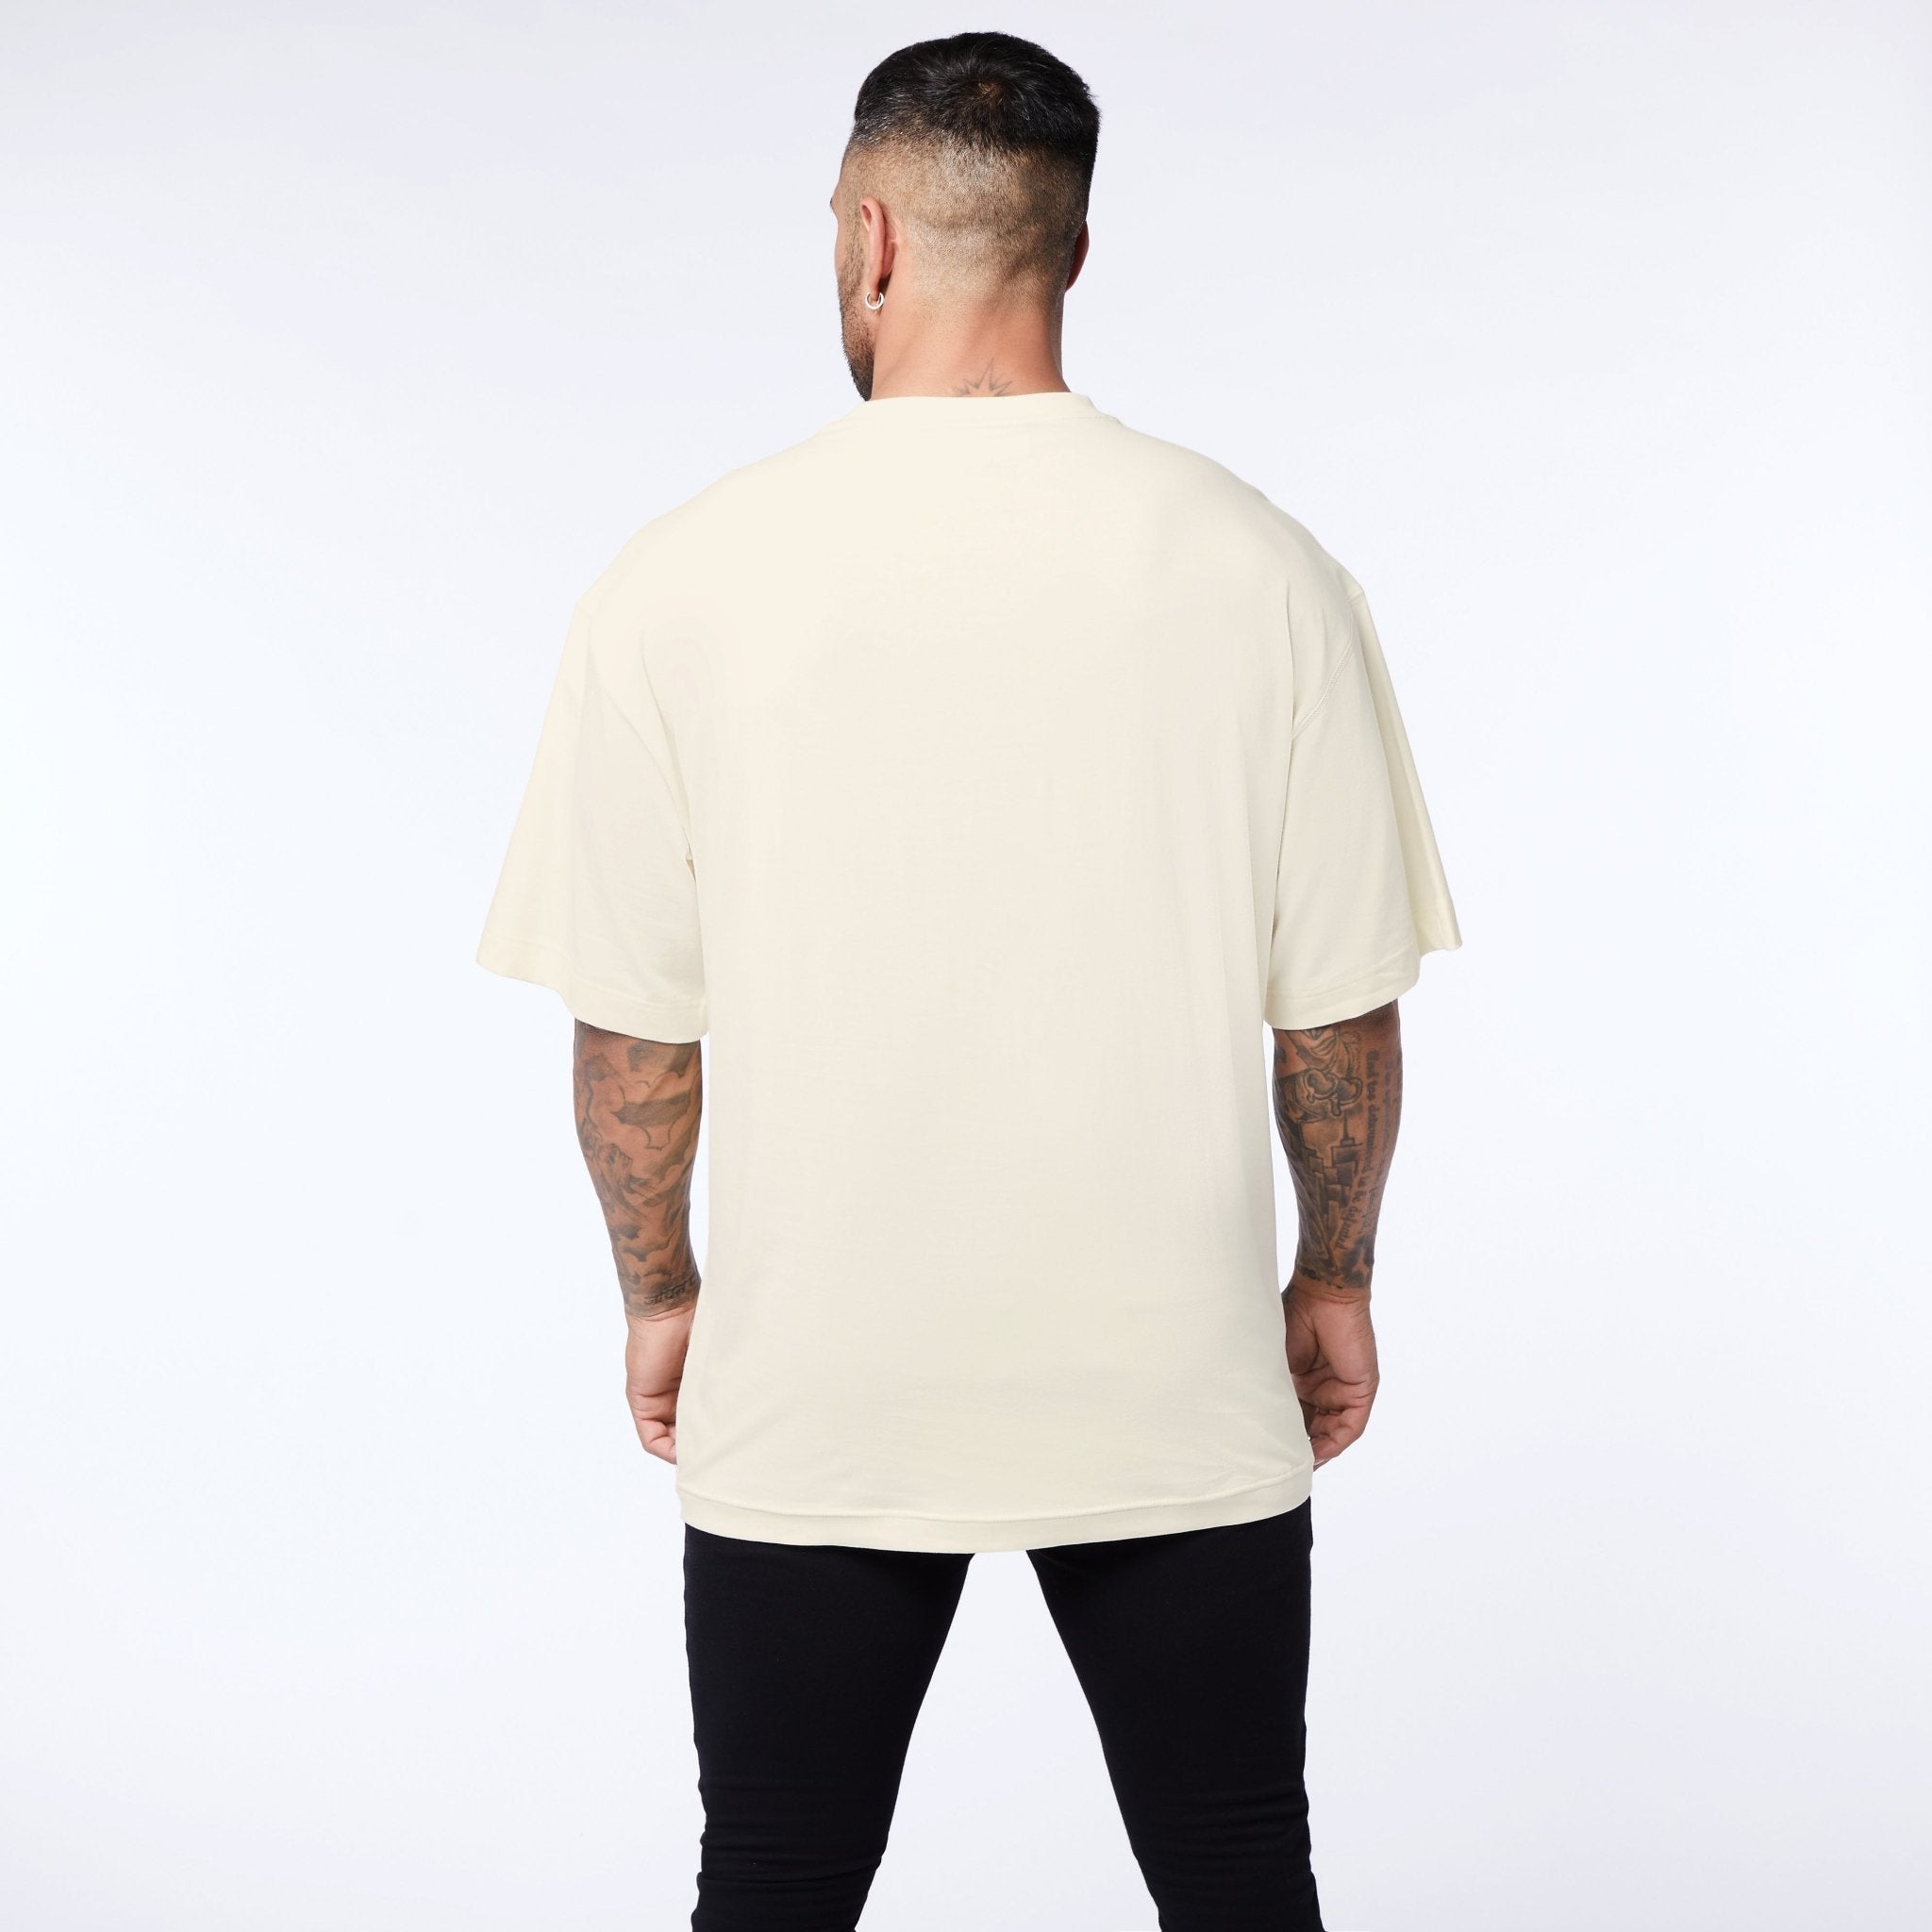 Vanquish Core Off White Oversized T Shirt - Vanquish Fitness